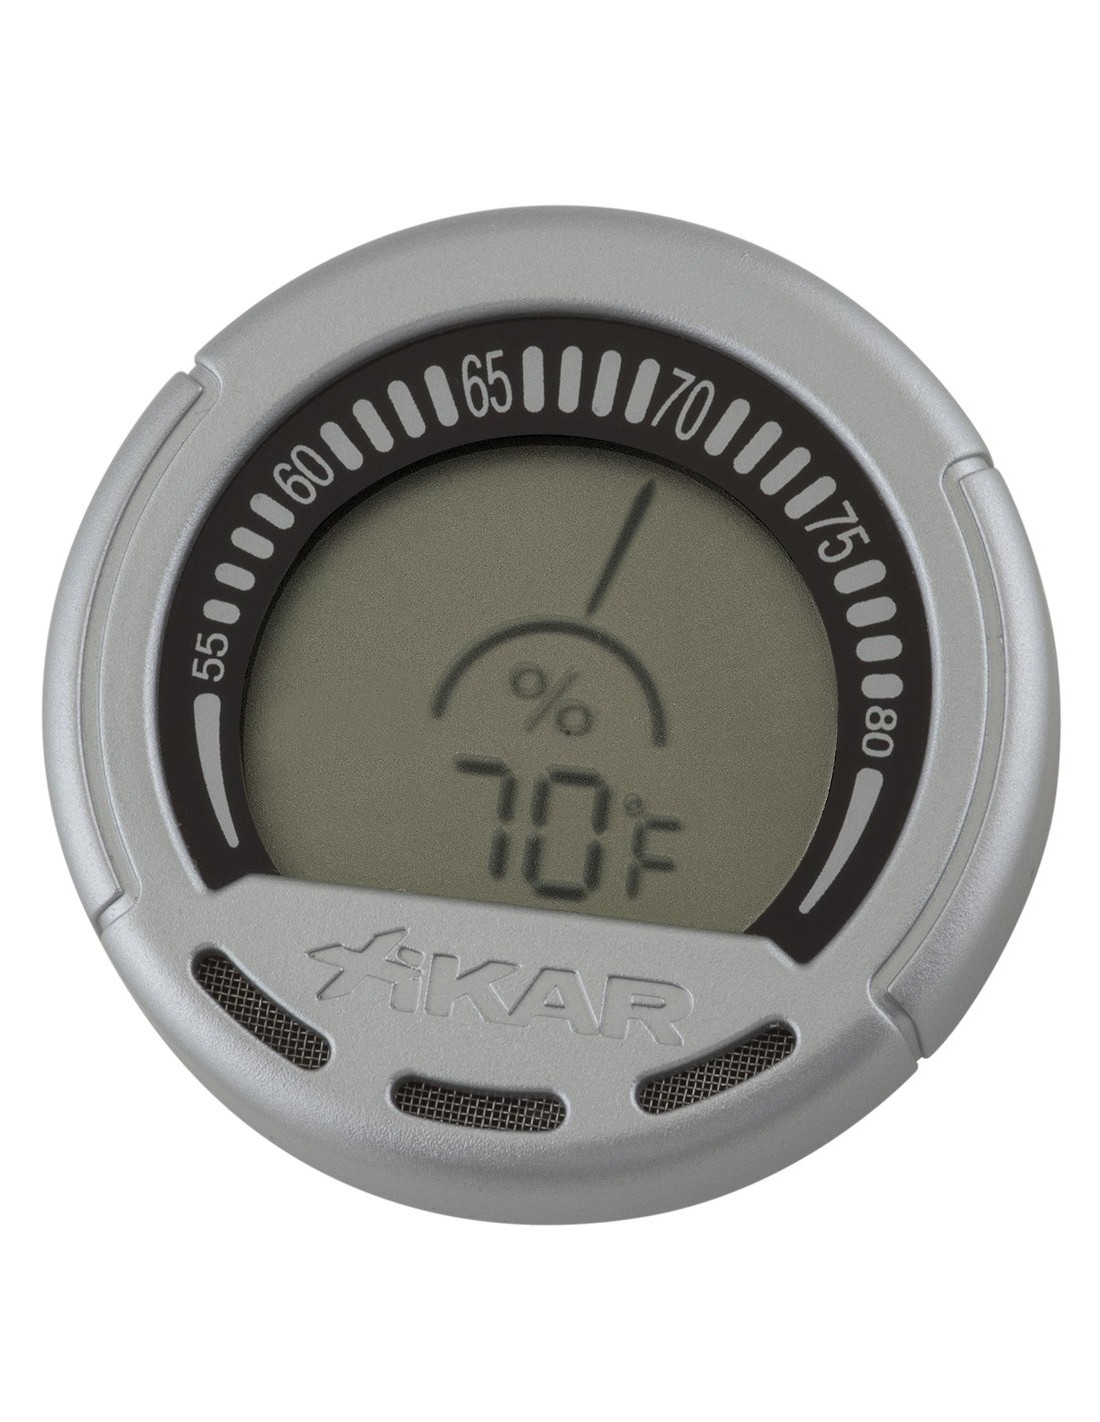 Thermo hygromètre Xikar DIGITAL - Le Comptoir des Aficionados